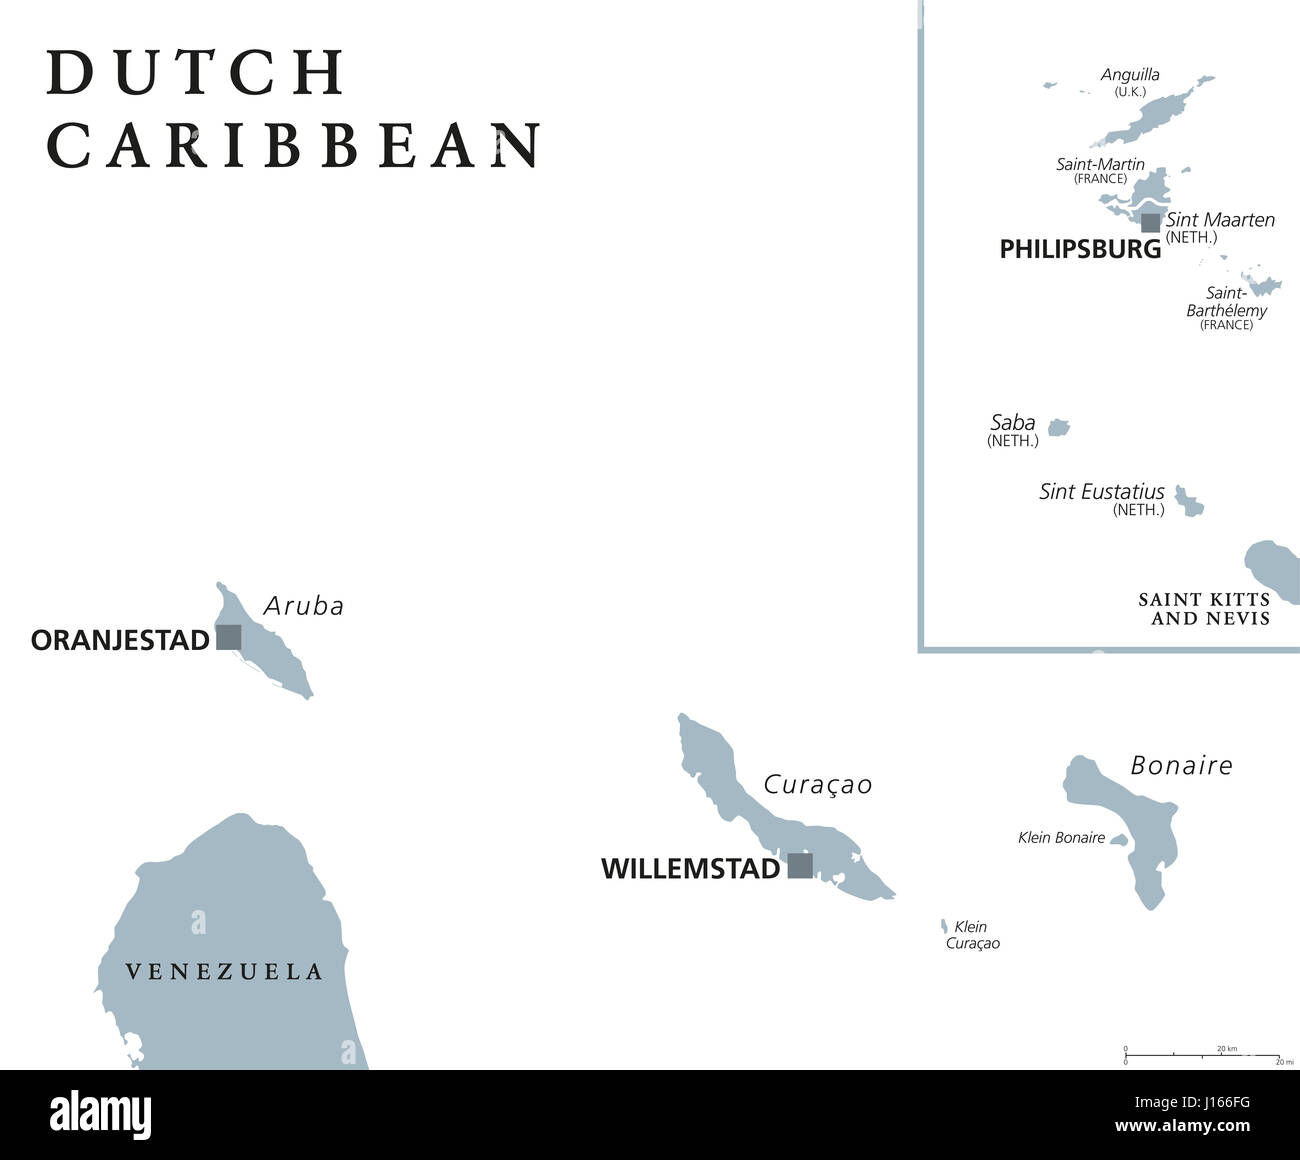 Niederländische Karibik politische Karte mit Aruba, Curaçao, Bonaire, Sint Maarten, Saba und Sint Eustatius. Ehemalige niederländische Antillen. Graue Abbildung. Stockfoto